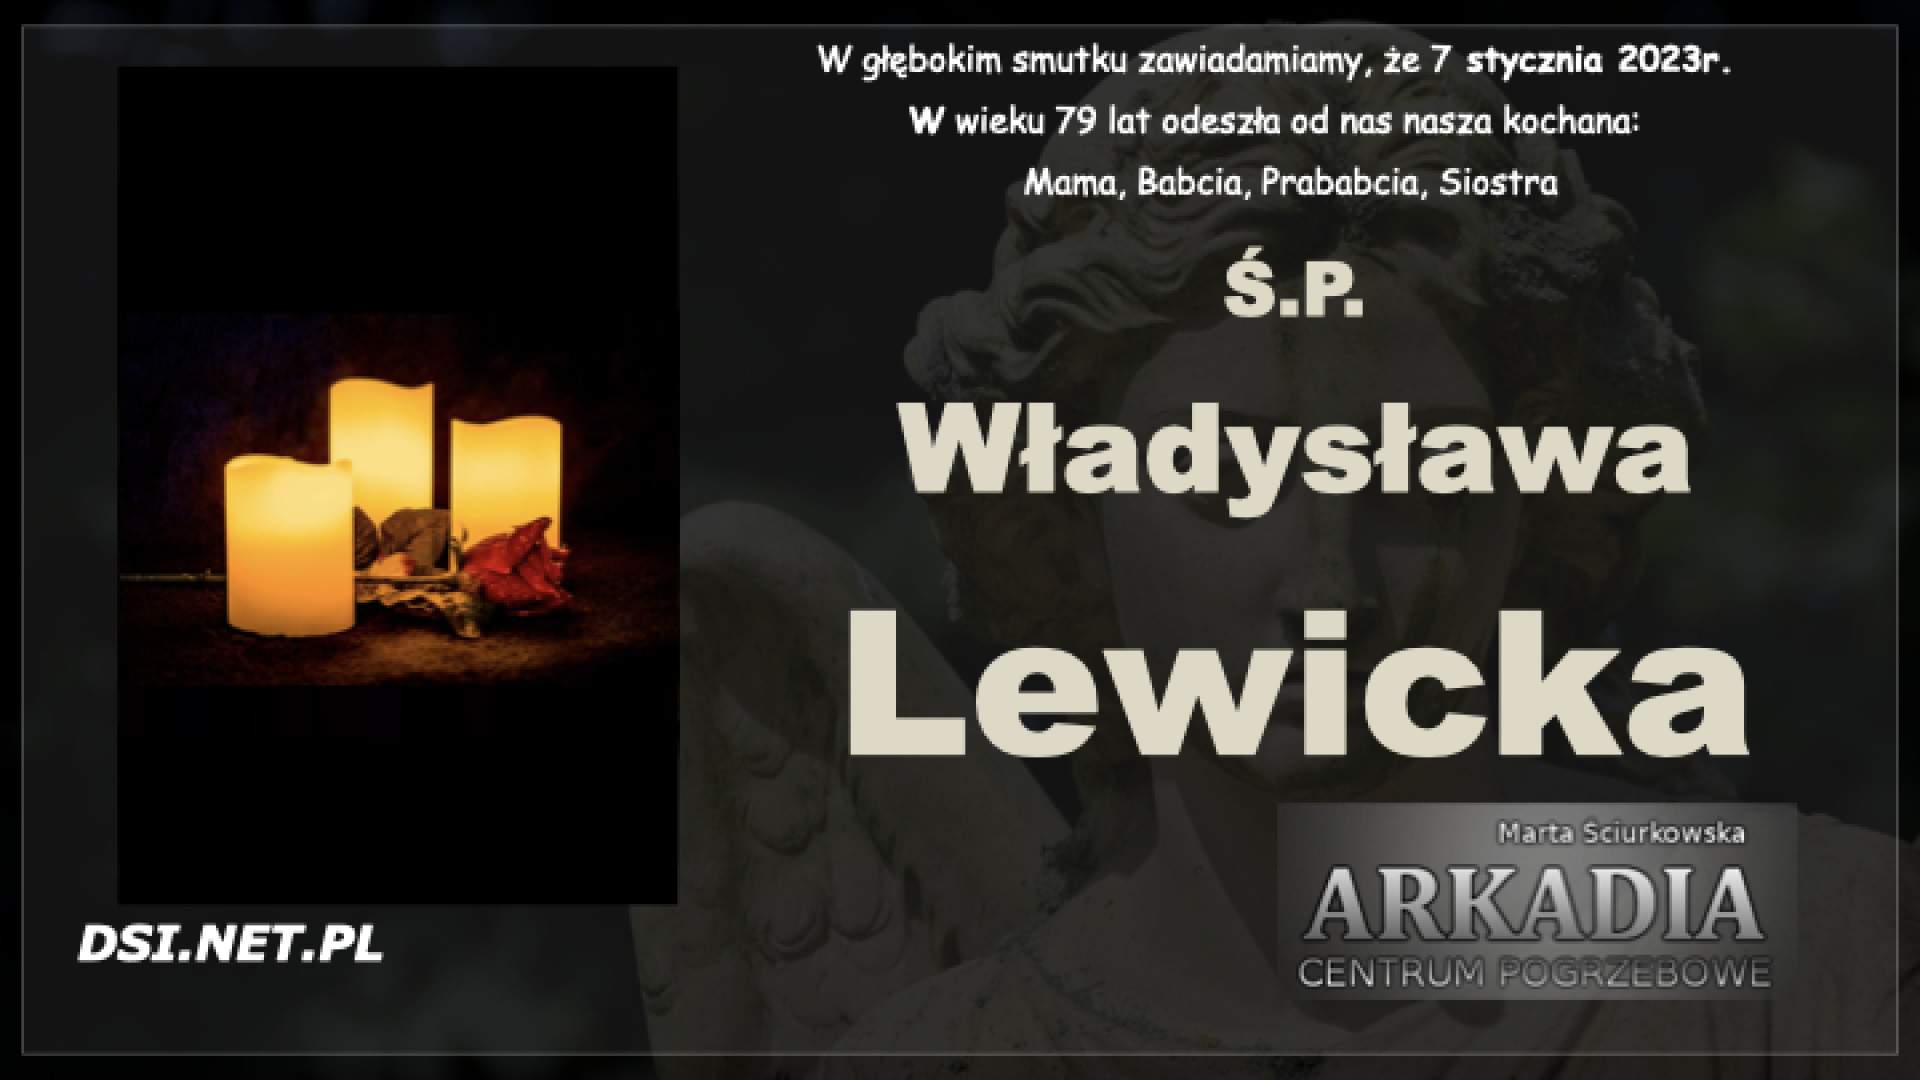 Ś.P. Władysława Lewicka